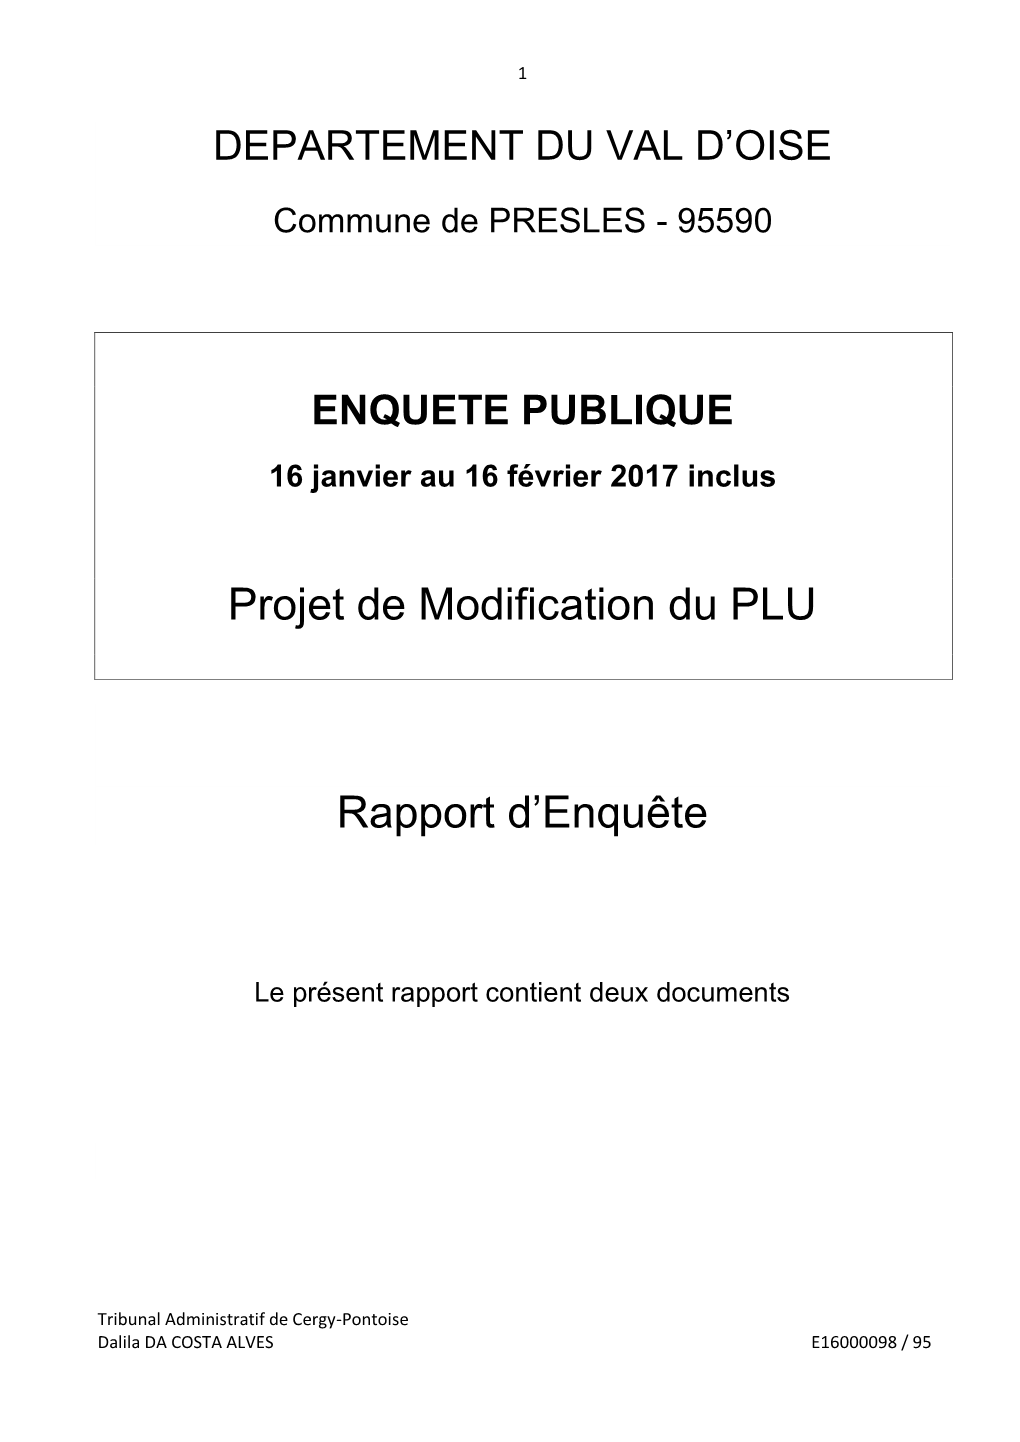 Projet De Modification Du PLU Rapport D'enquête